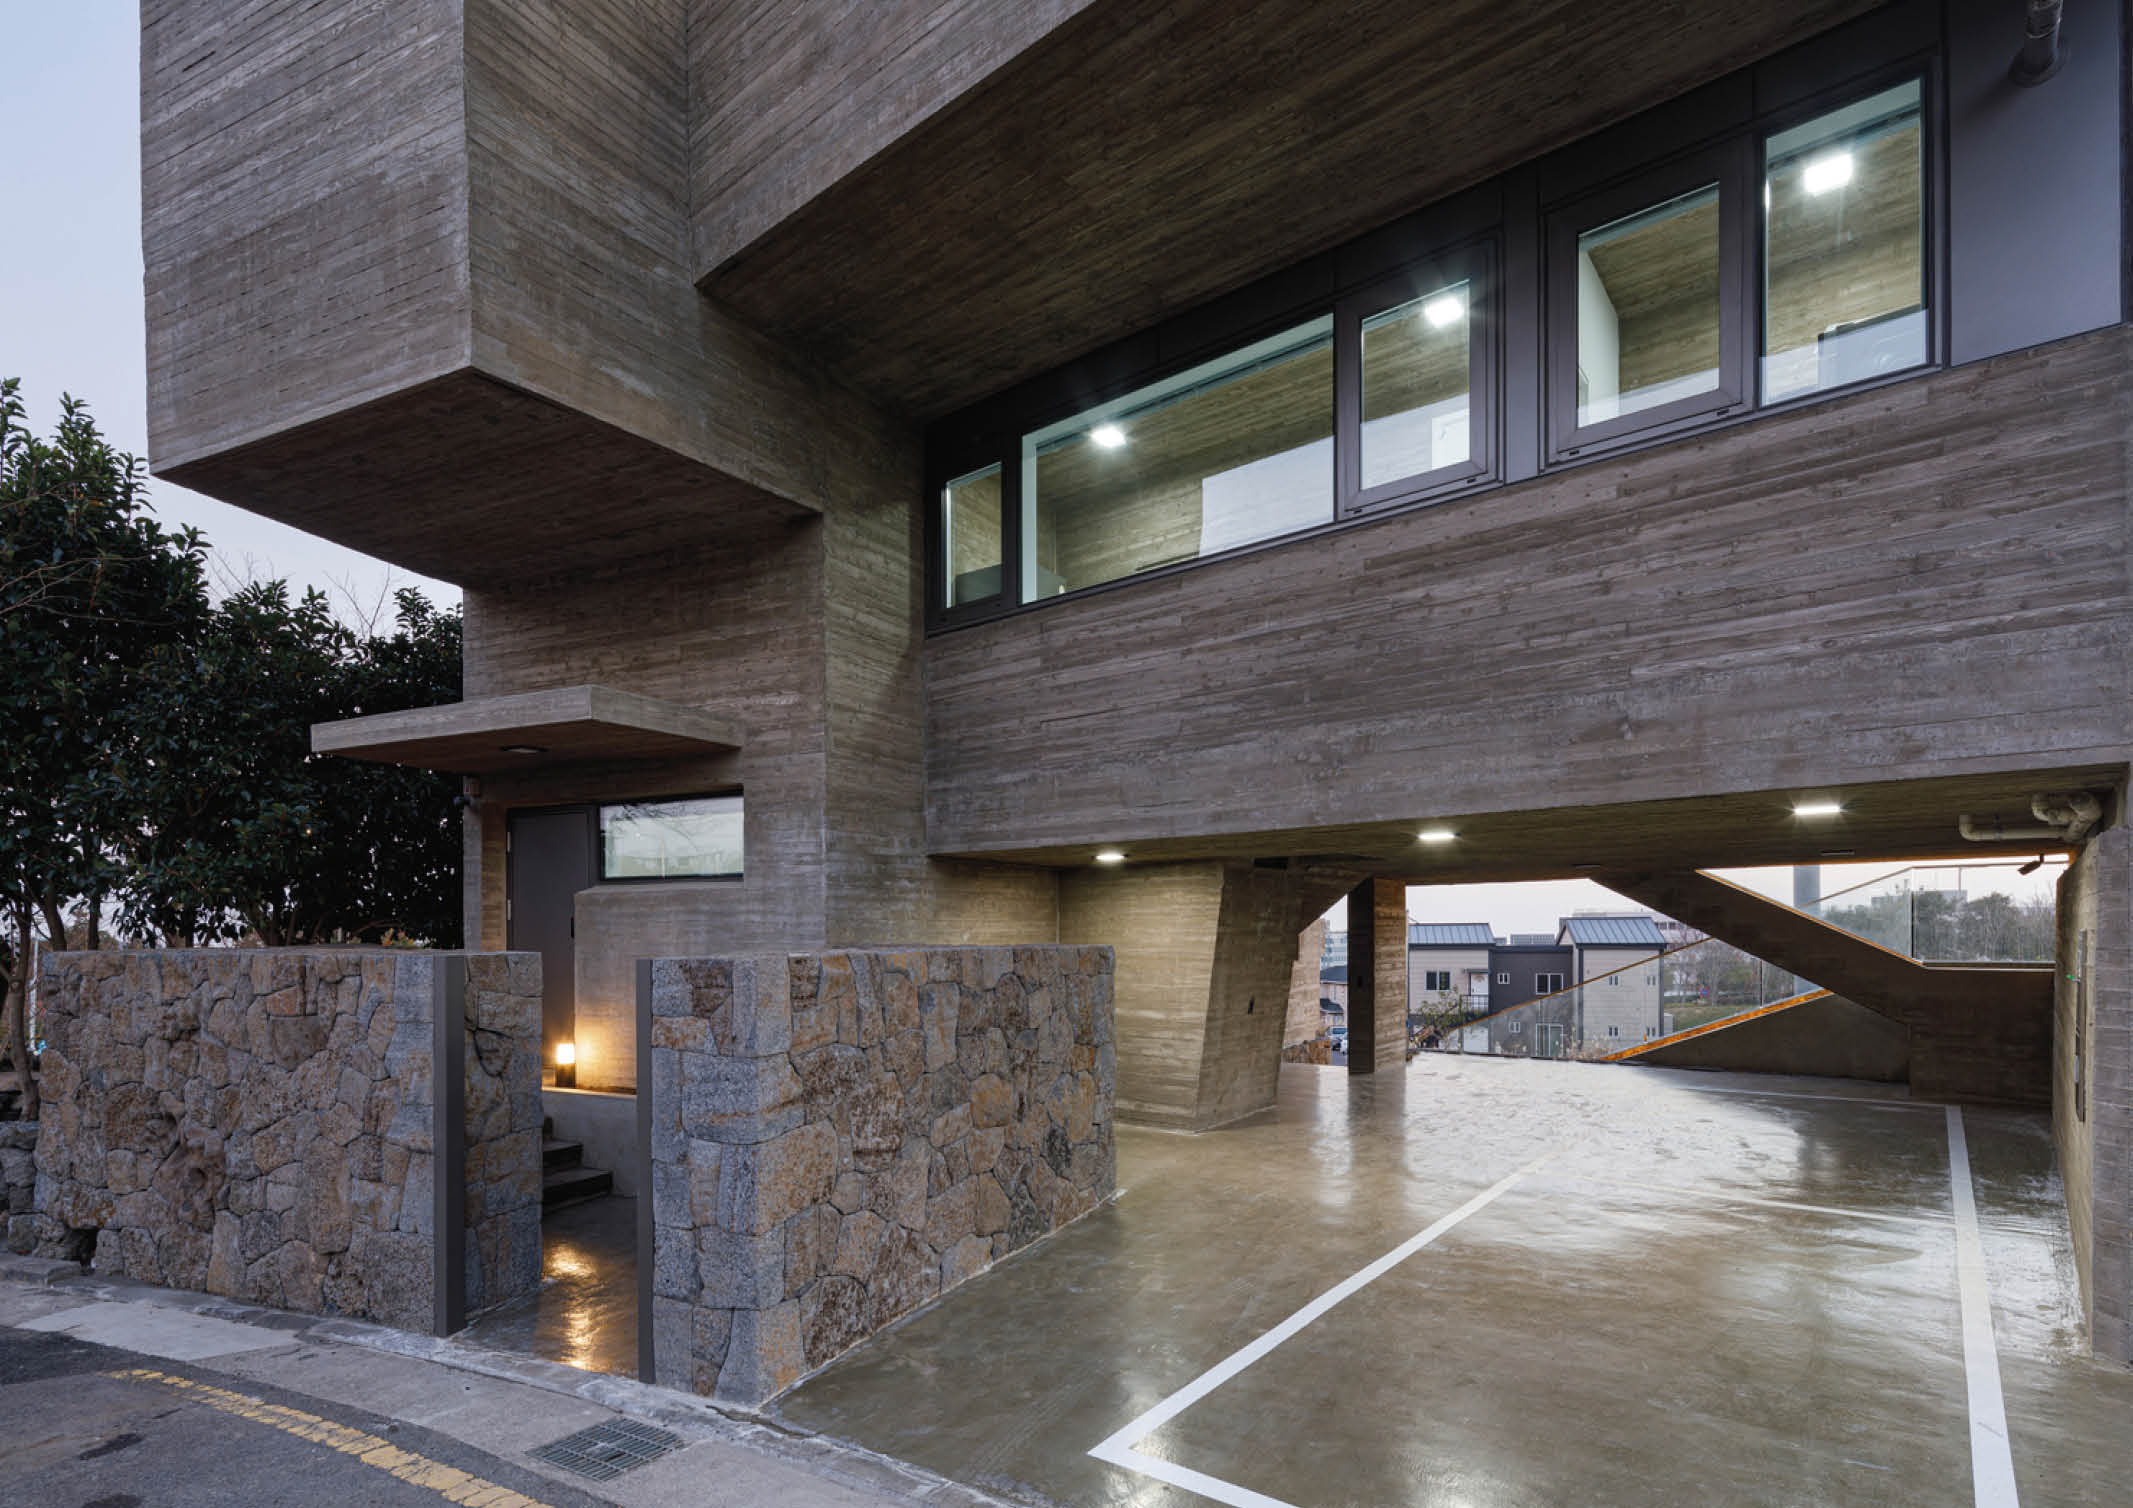 Jeju Residence designed by Moon Hoon